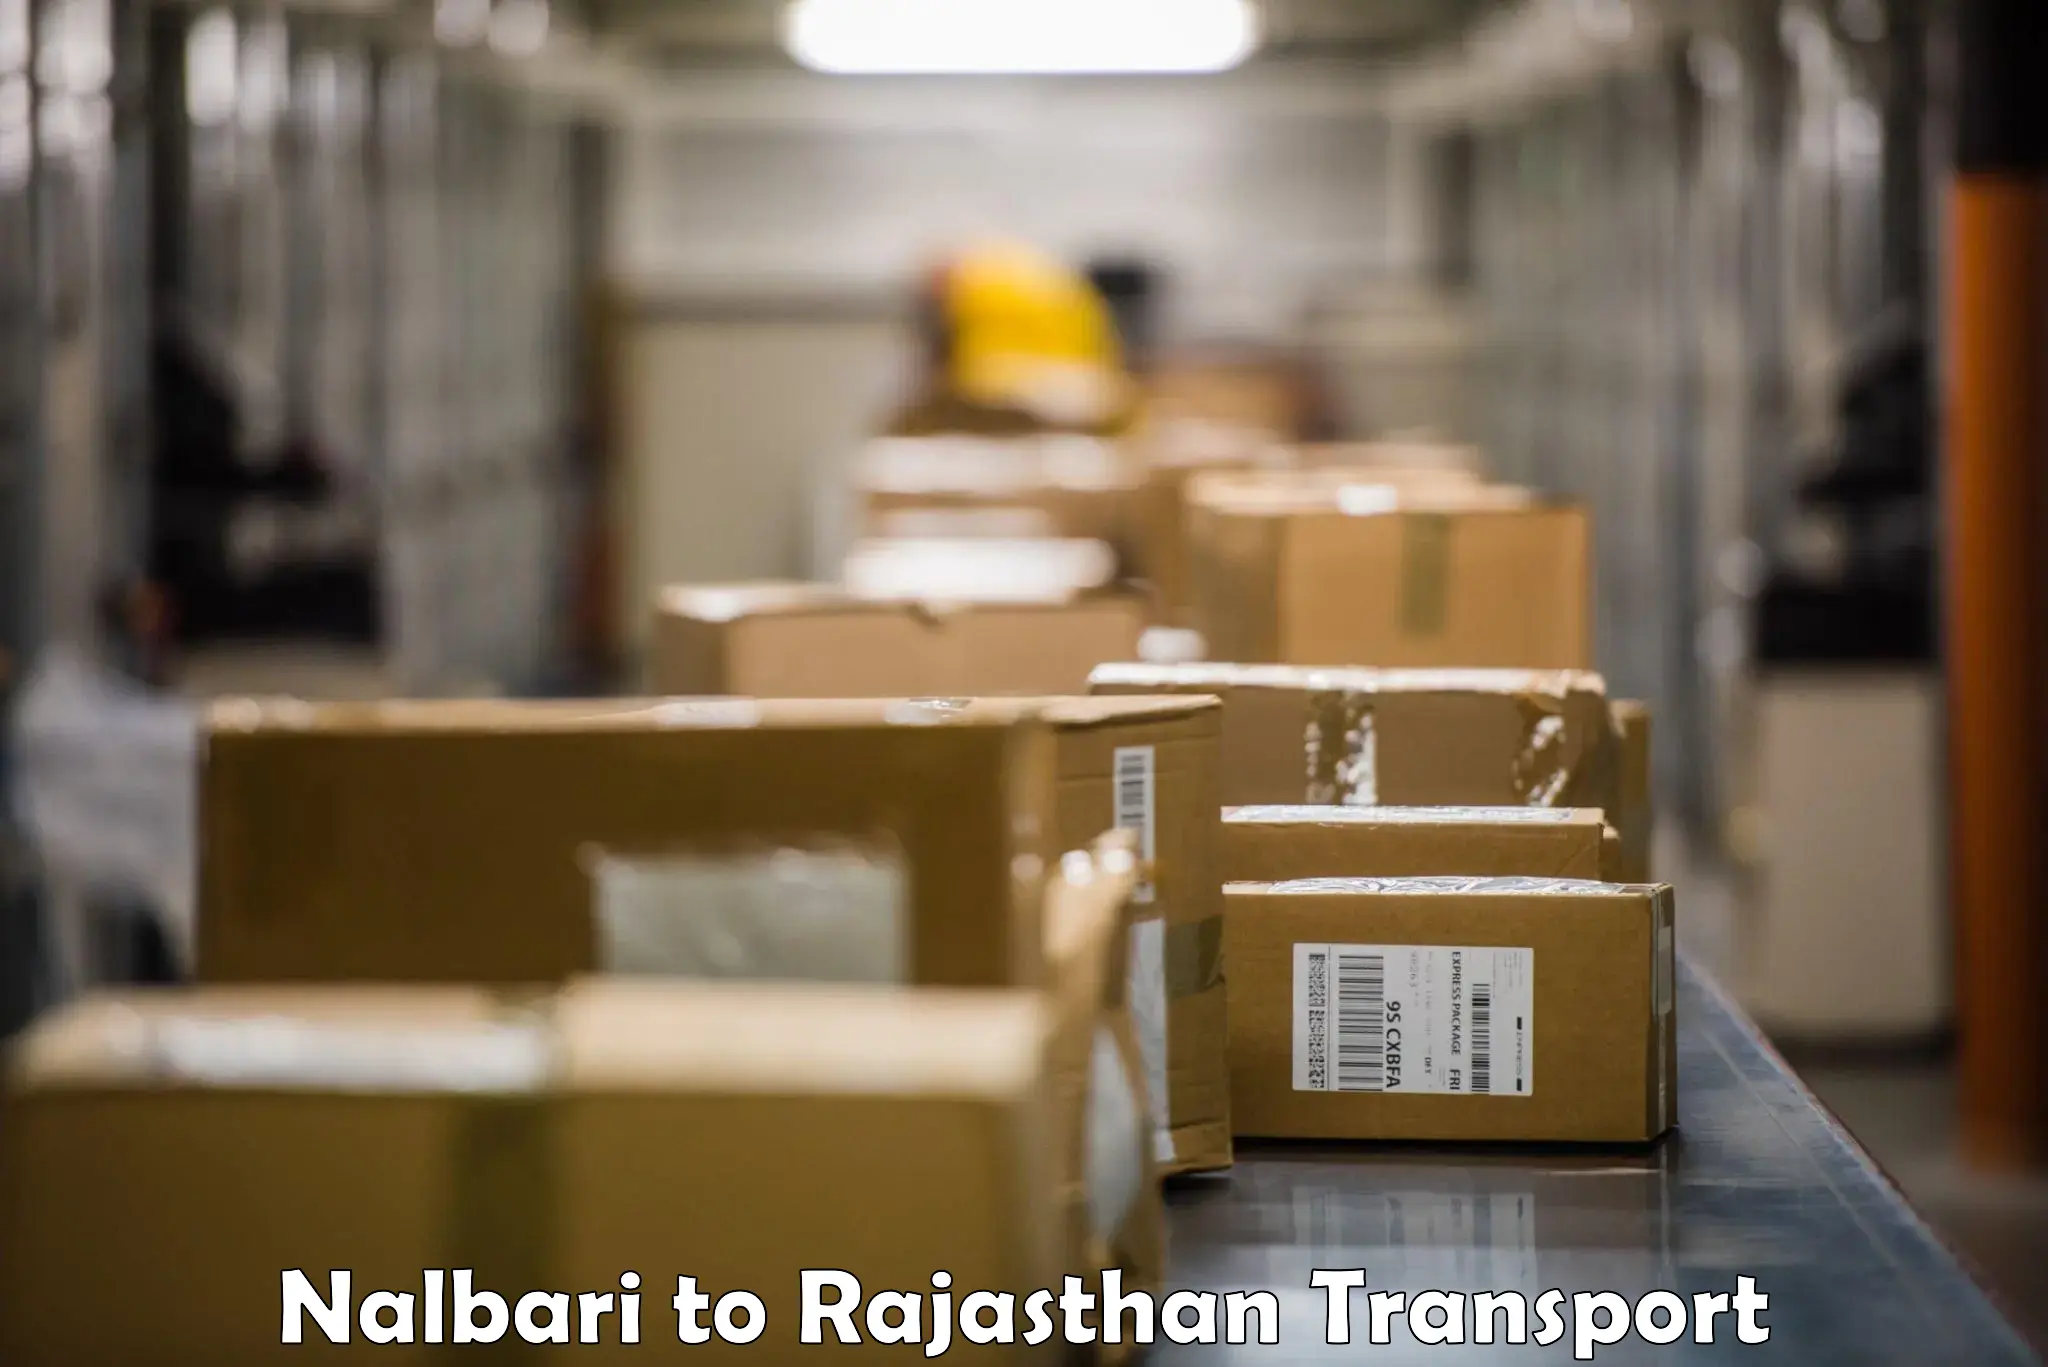 Transport shared services Nalbari to Kuchaman